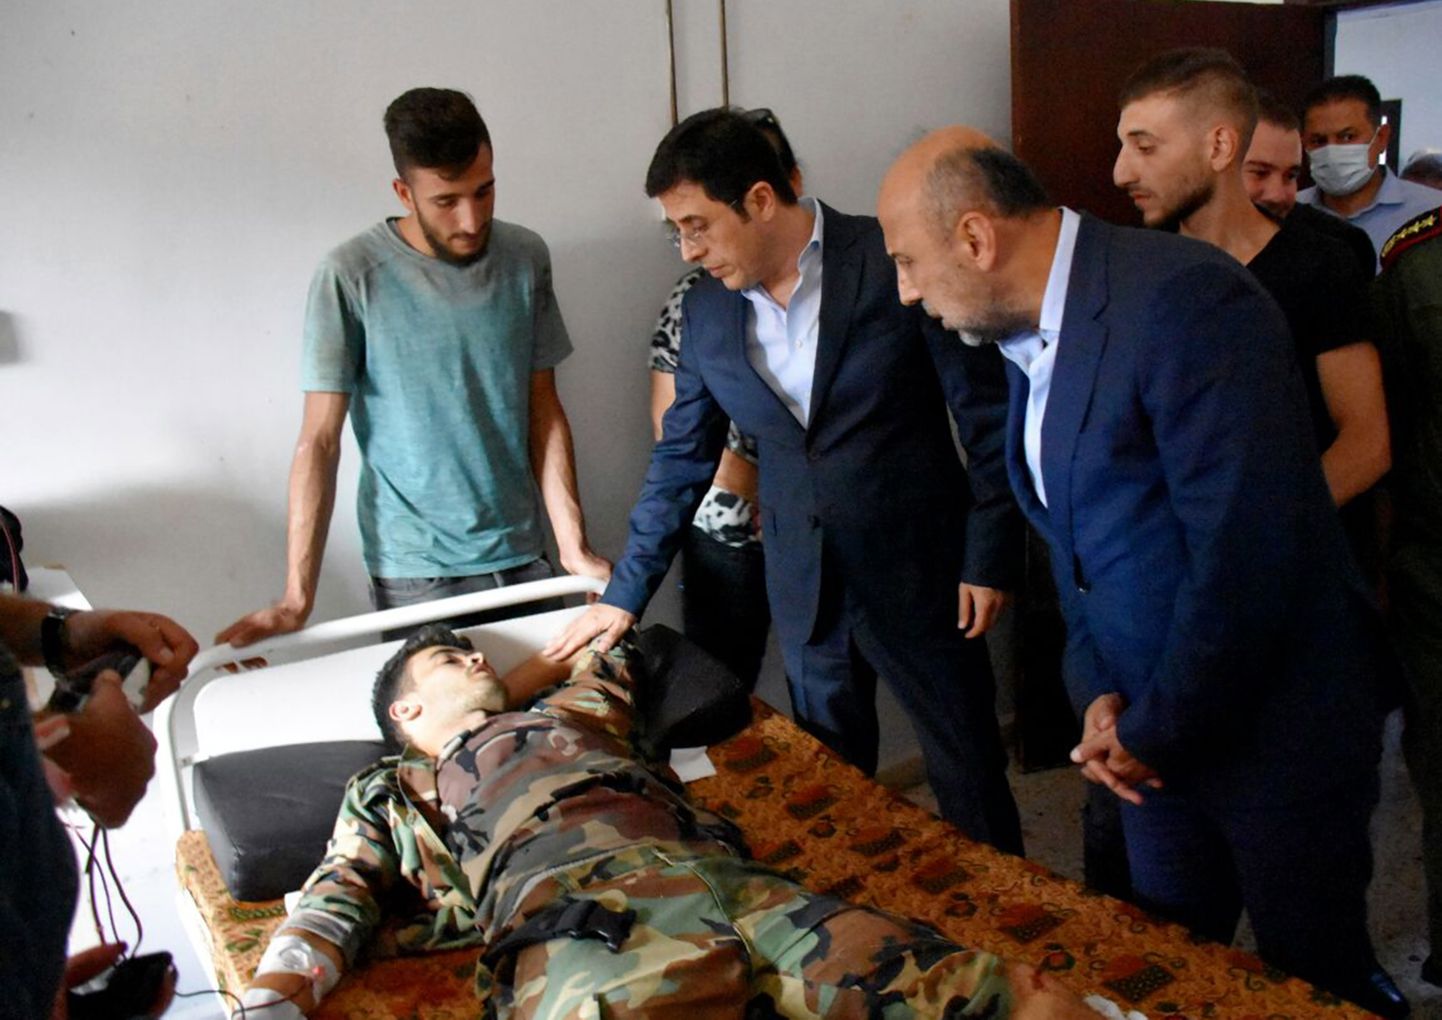 Süüria tervishoiuminister Hassan al-Ghabash külastamas droonirünnakus haavatuid Homsi haiglas.